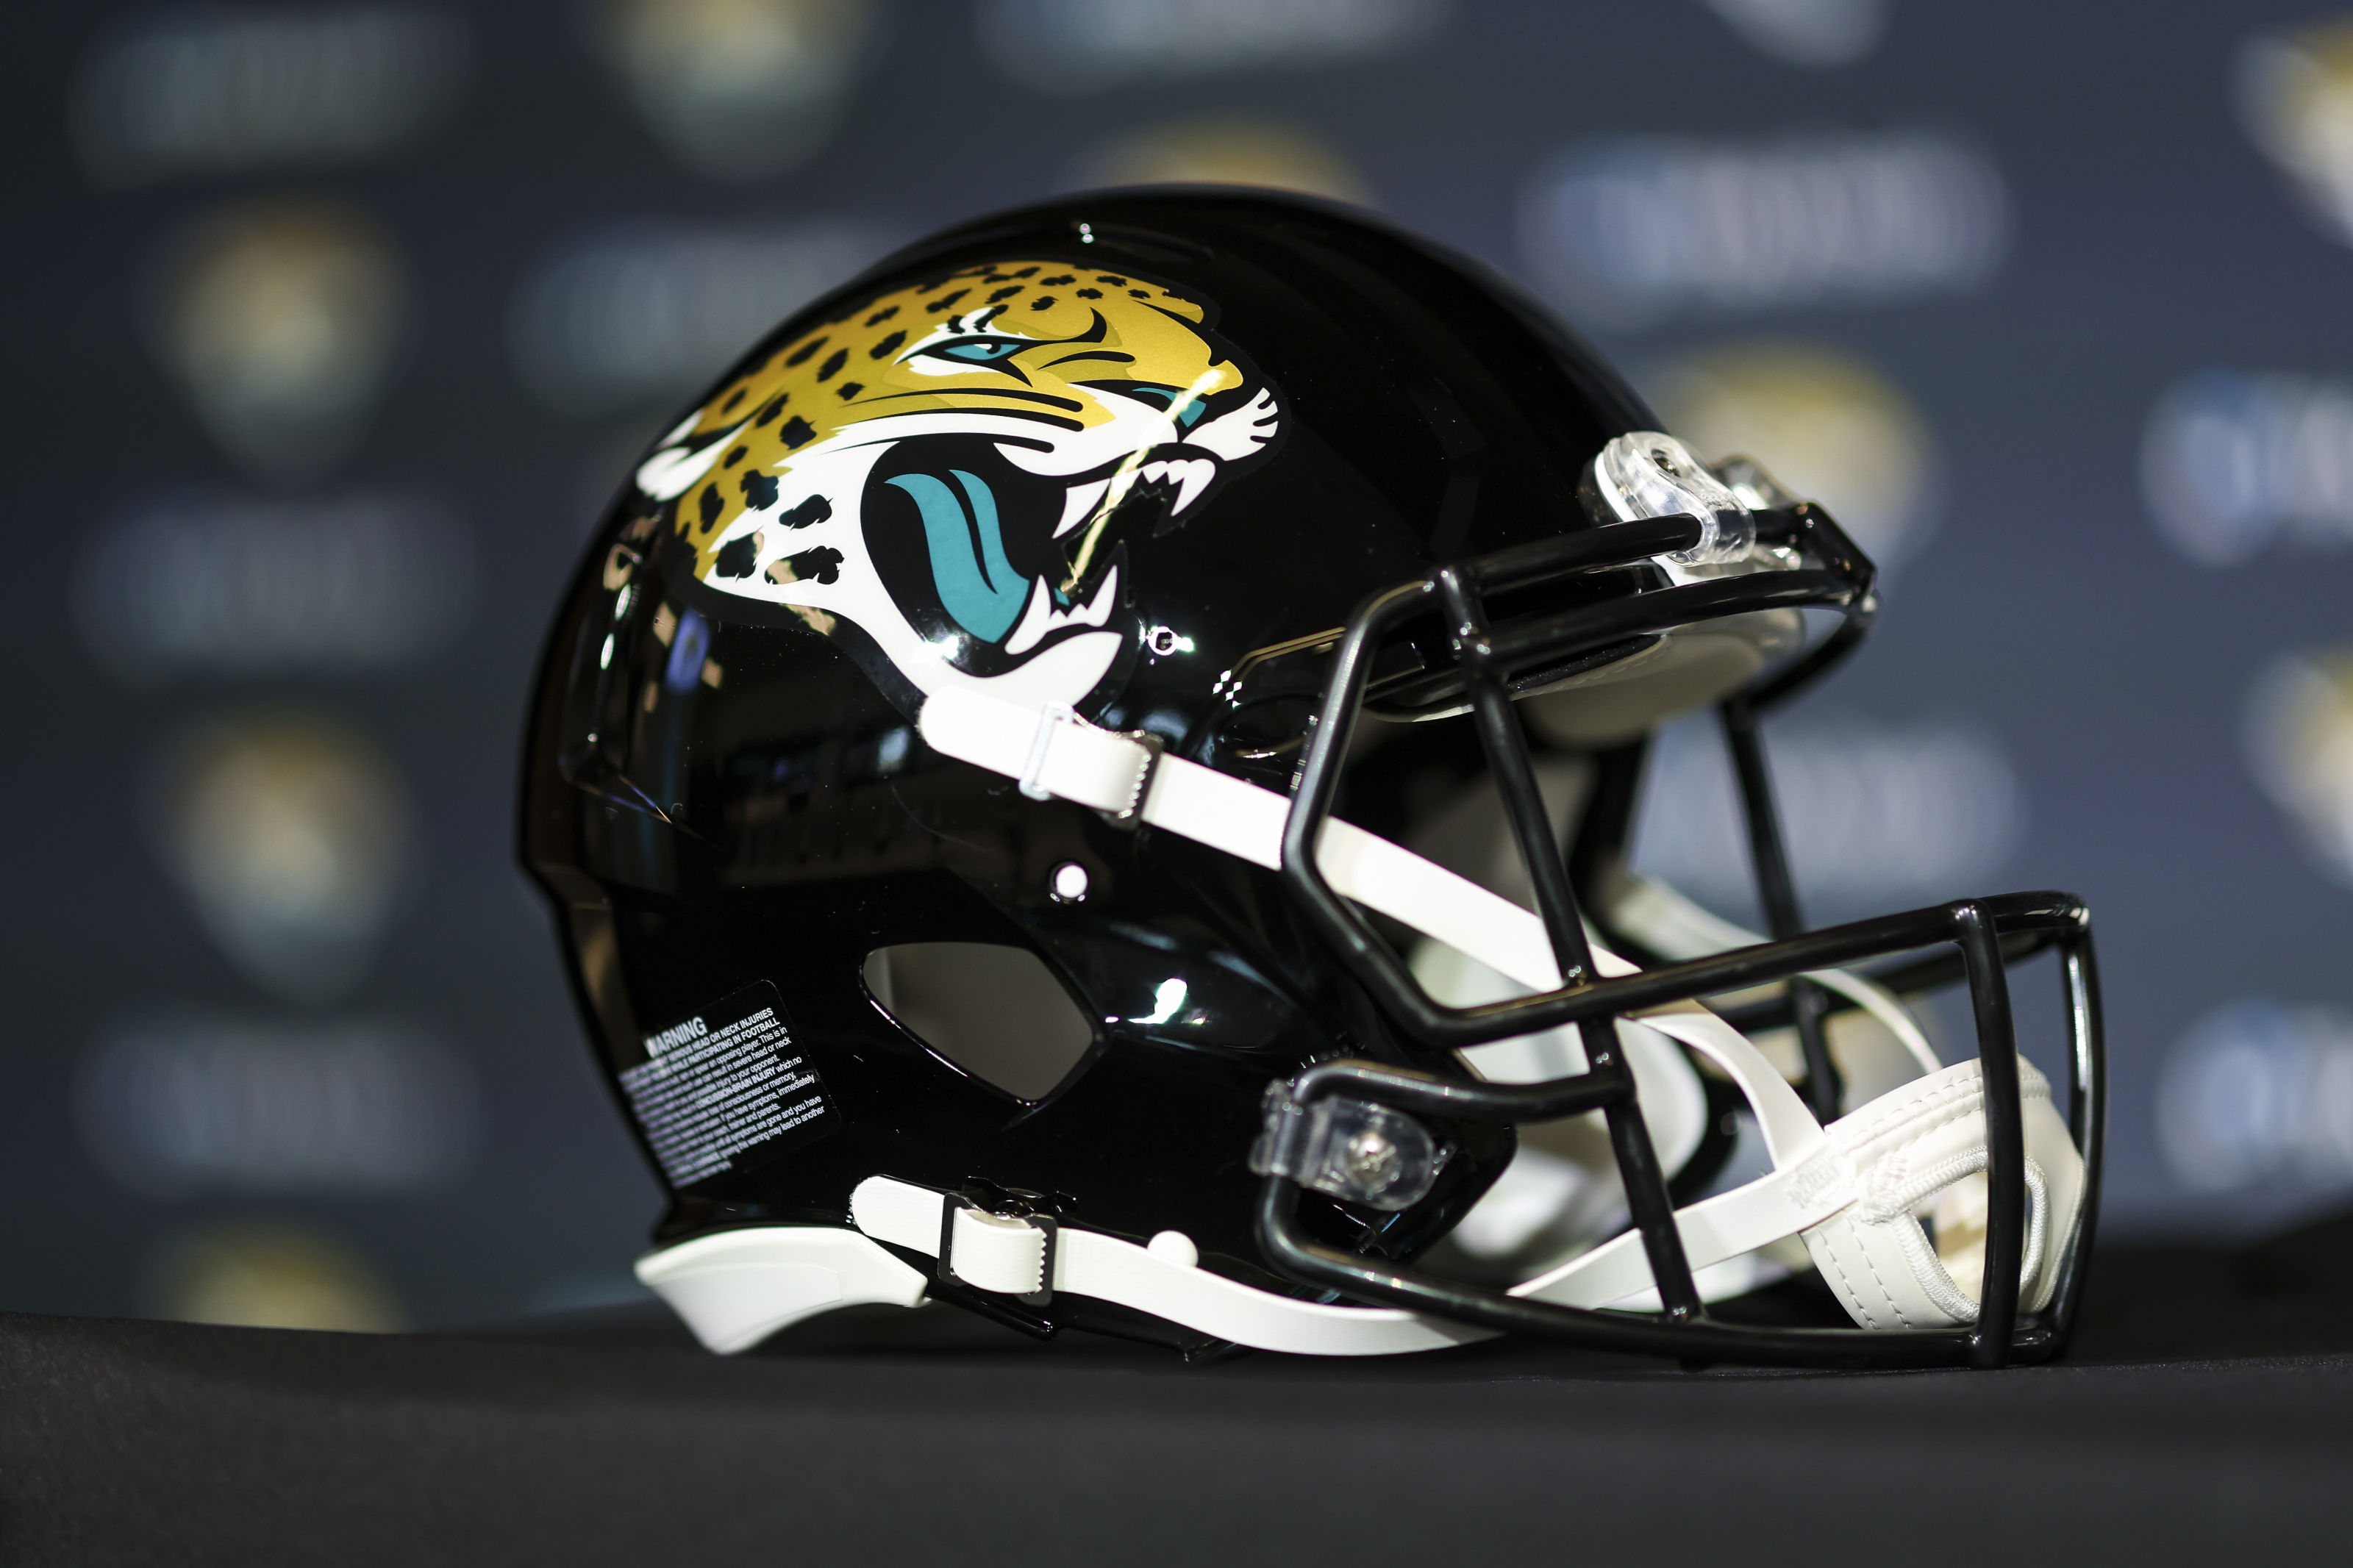 jacksonville jaguars draft 2022